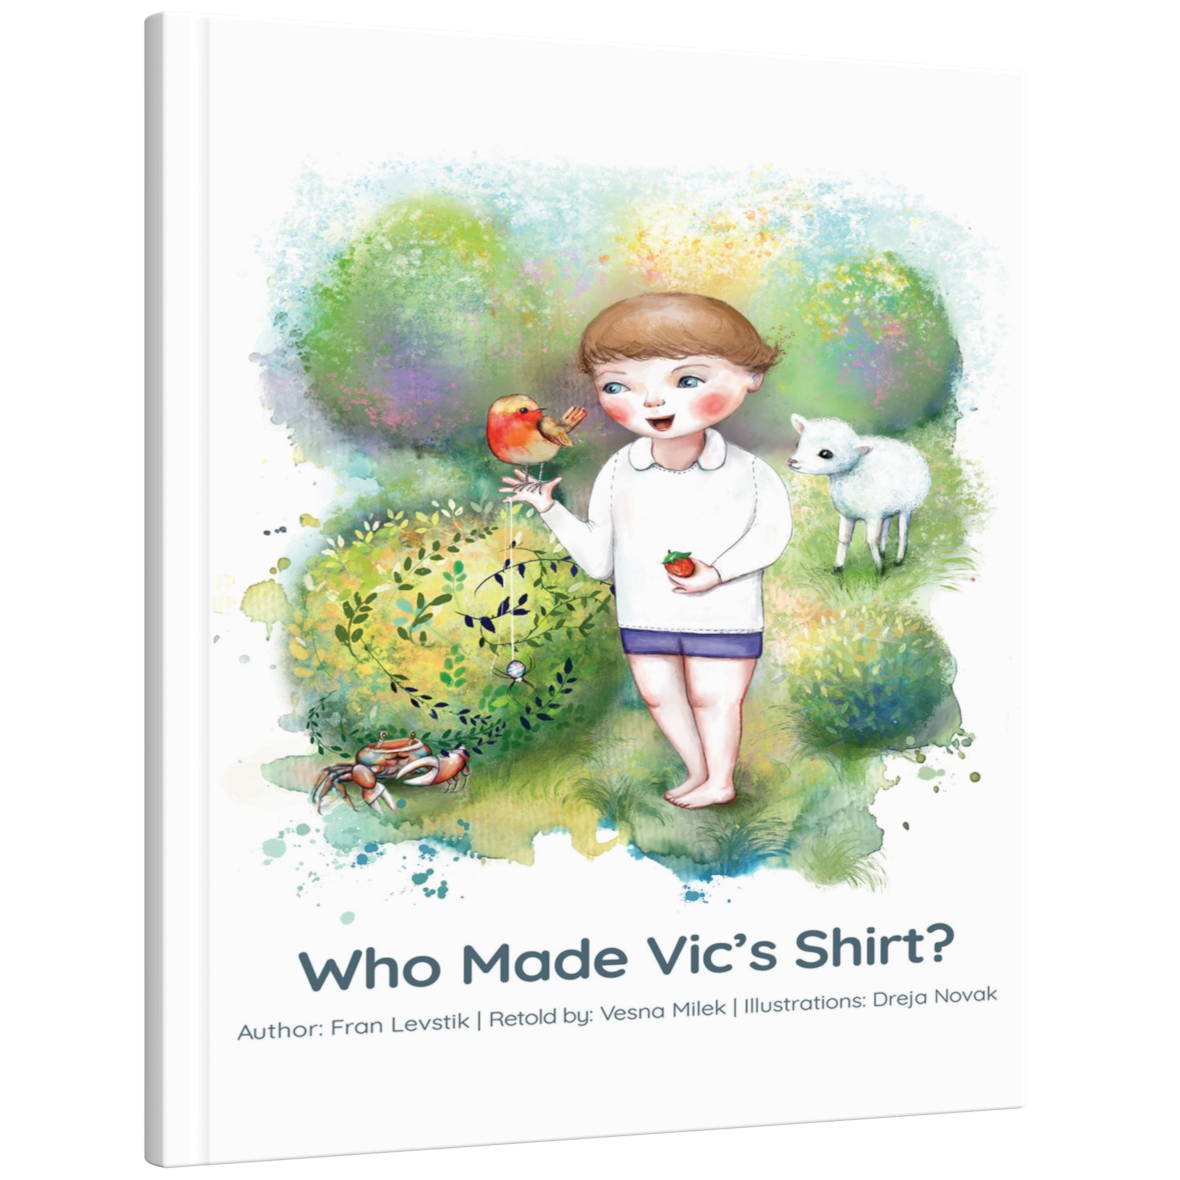 Who made Vic’s shirt?